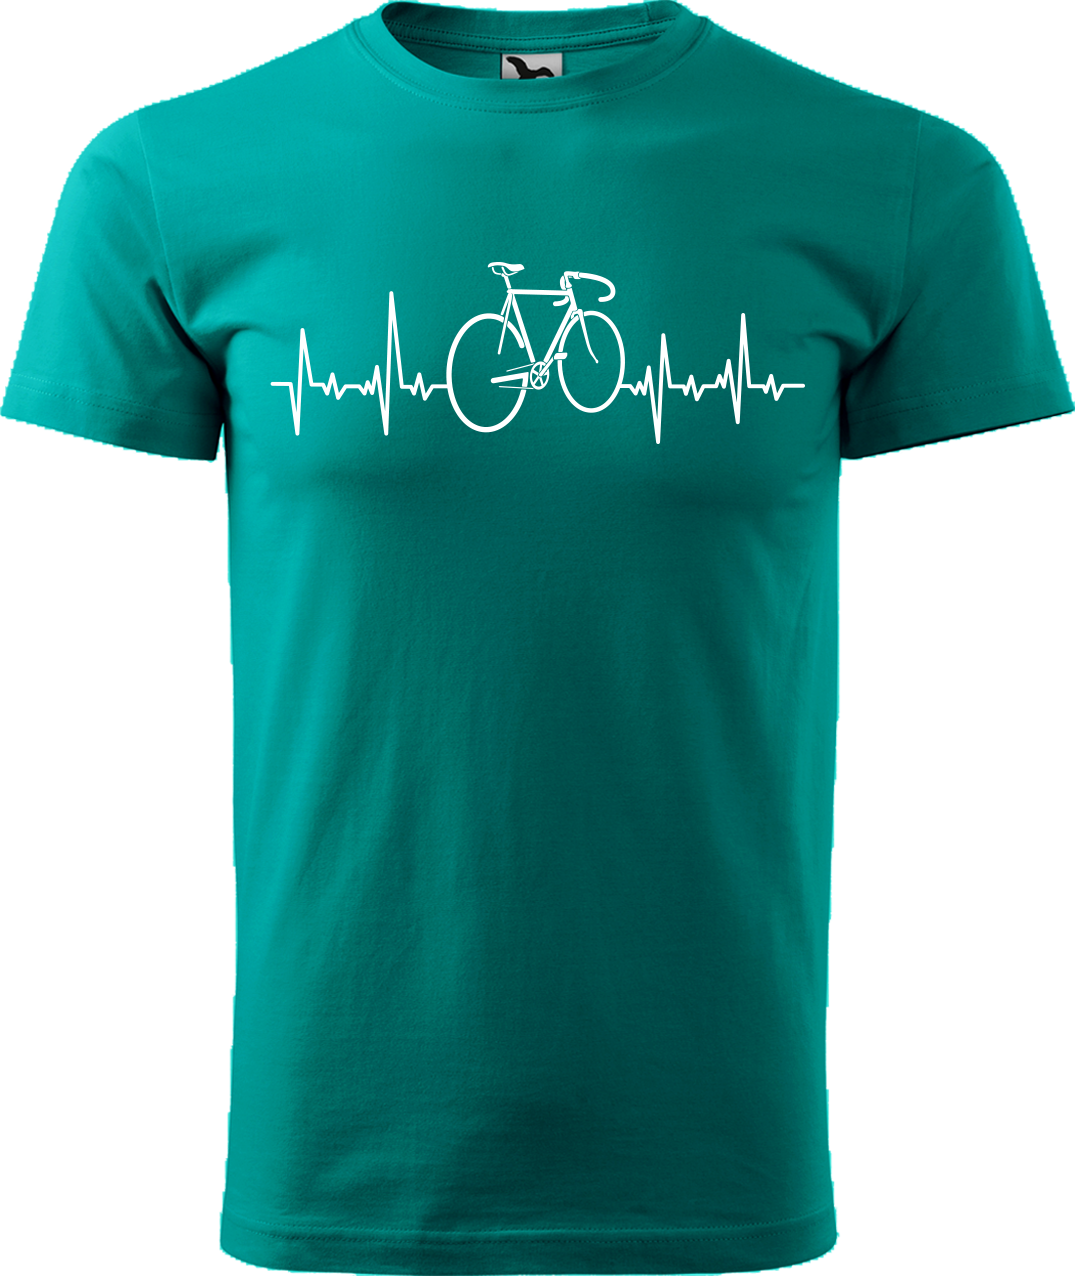 Pánské tričko s kolem - Cyklistův kardiogram Velikost: 2XL, Barva: Emerald (19)